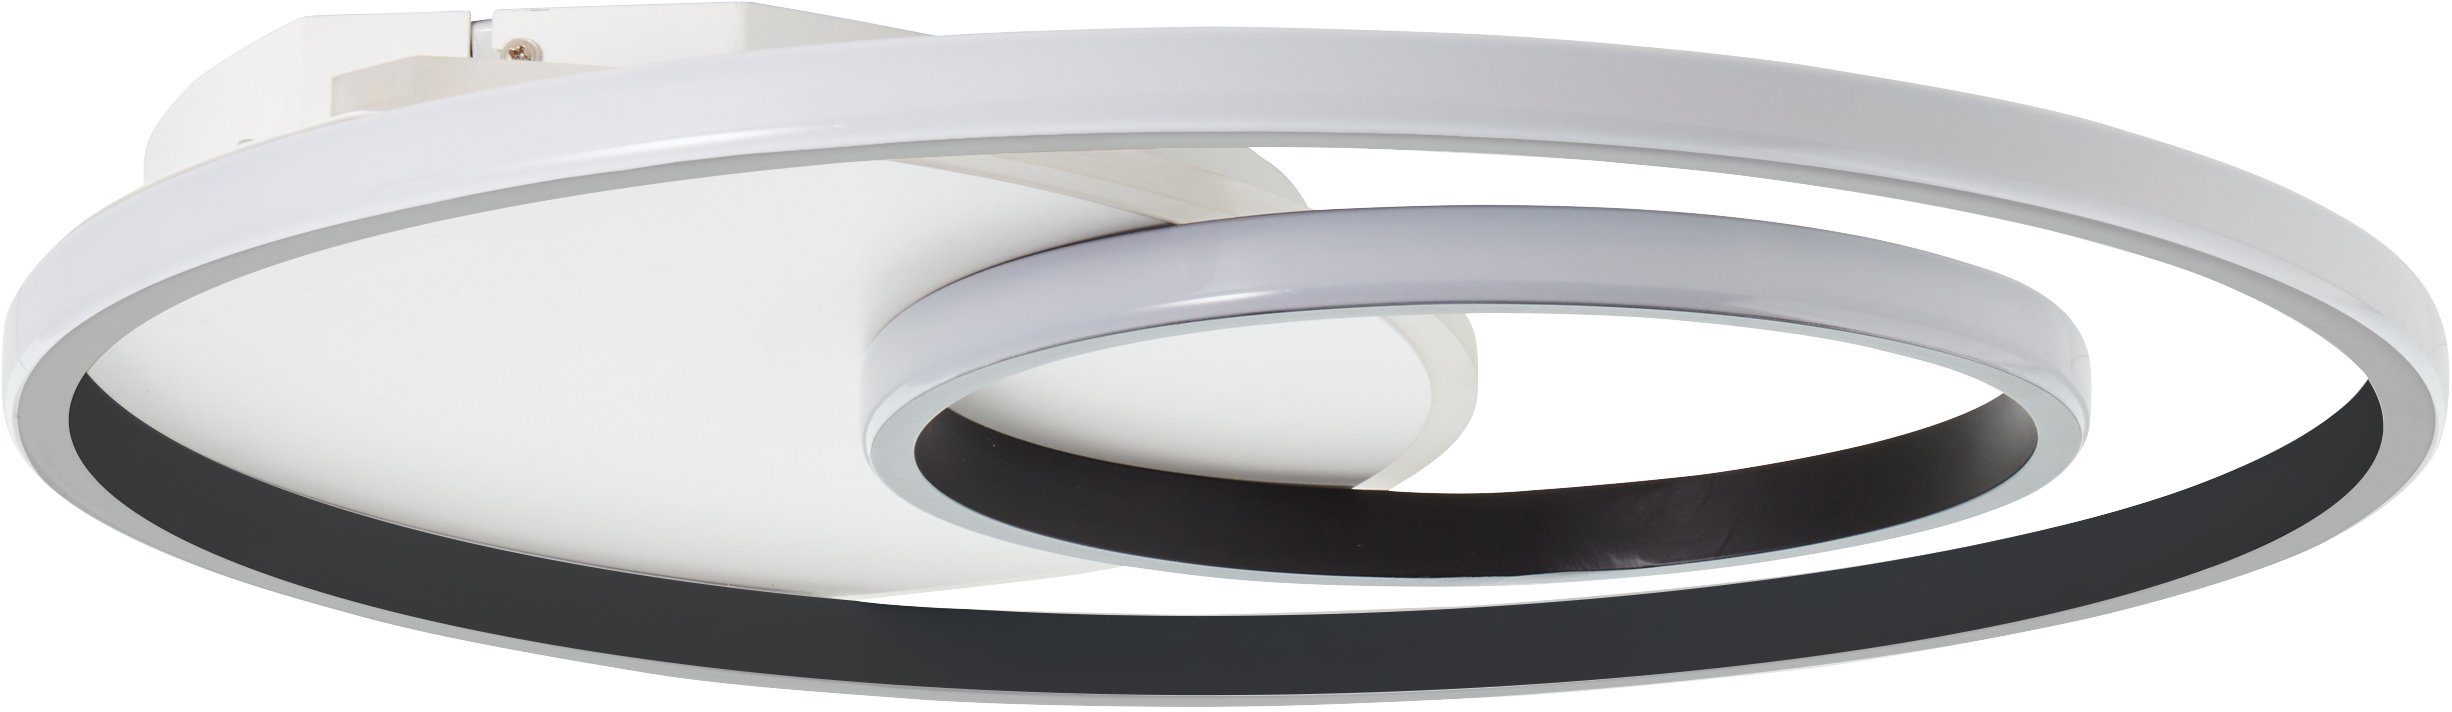 Brilliant Deckenleuchte Merapi, Metall/Kunststof Lampe, 51x51cm 3000K, weiß/schwarz, Deckenleuchte LED Merapi